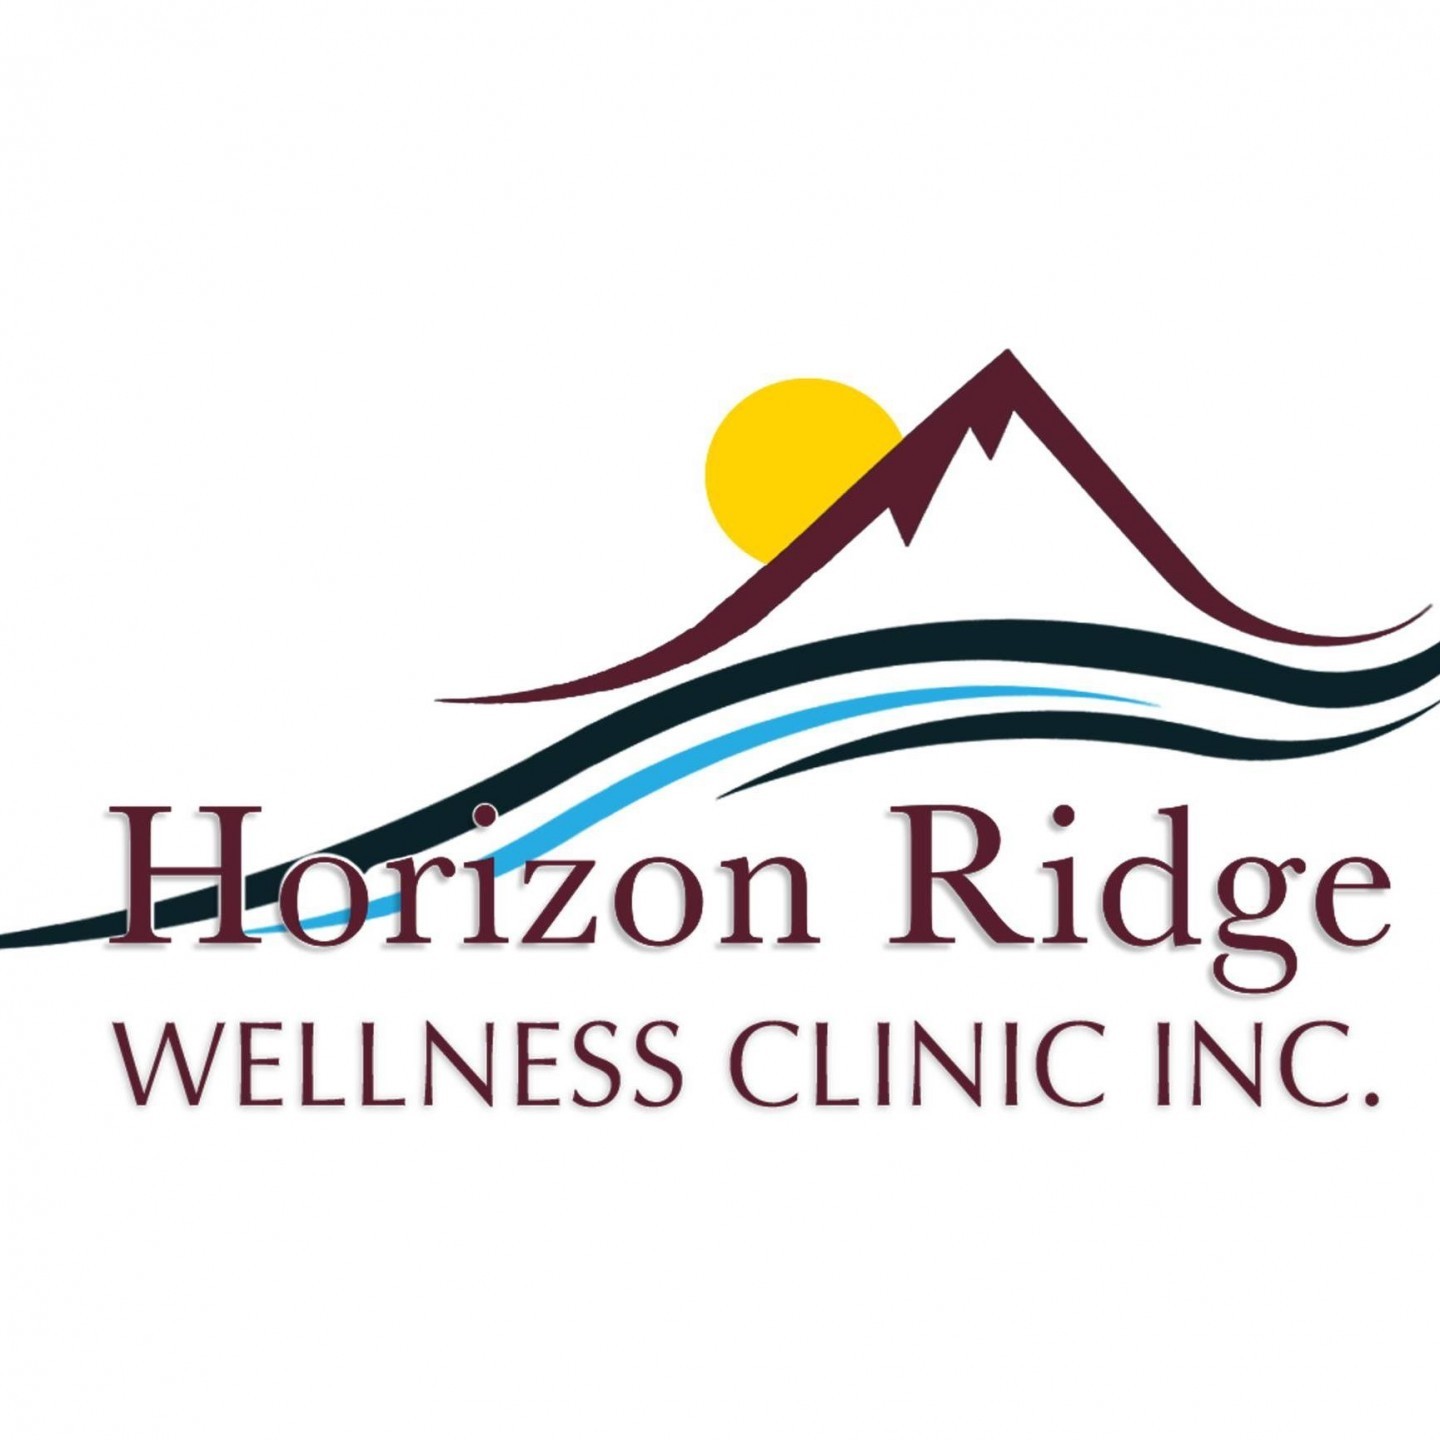 Horizon Ridge Wellness Clinic